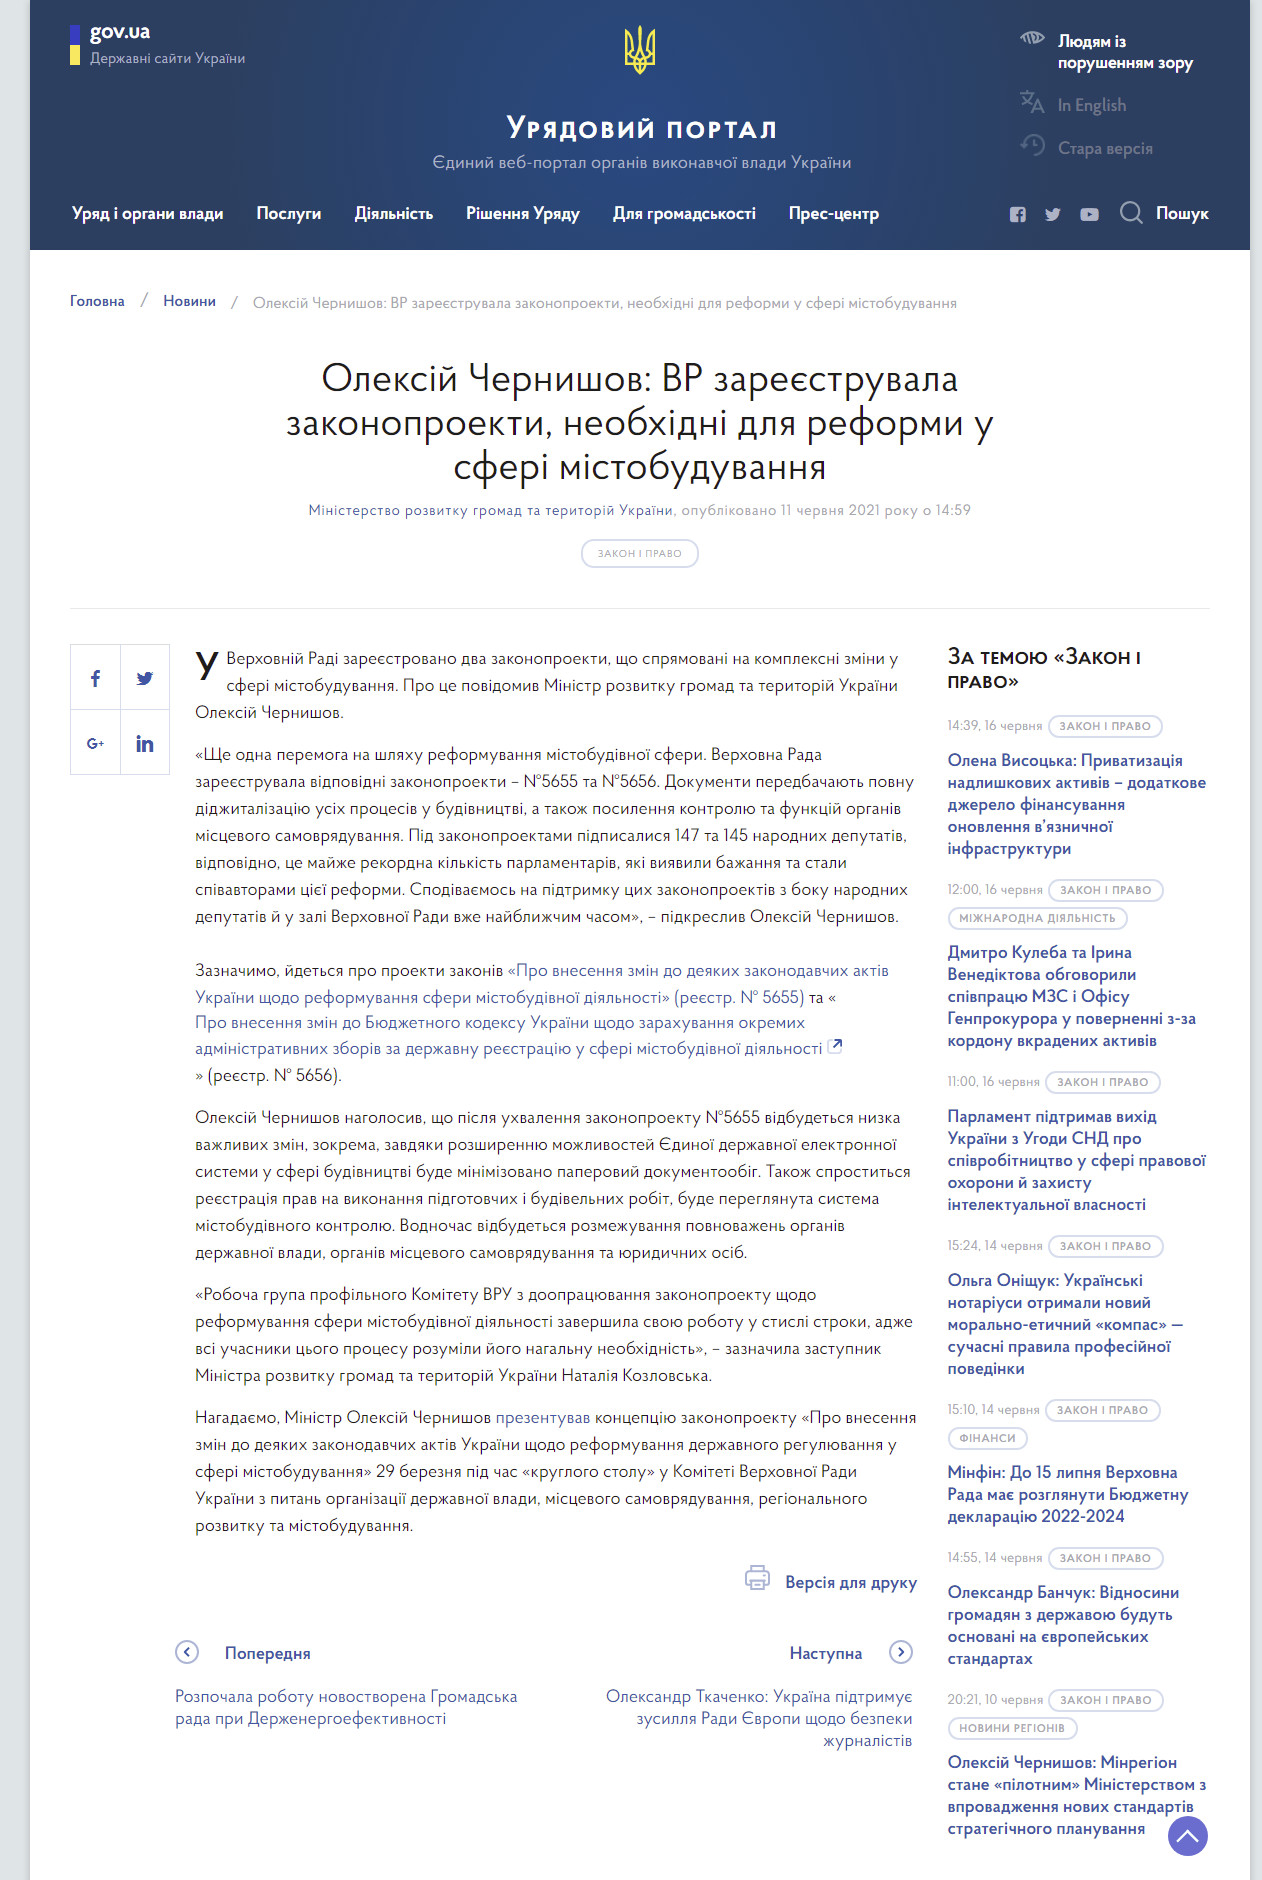 https://www.kmu.gov.ua/news/oleksij-chernishov-vr-zareyestruvala-zakonoproekti-neobhidni-dlya-reformi-u-sferi-mistobuduvannya